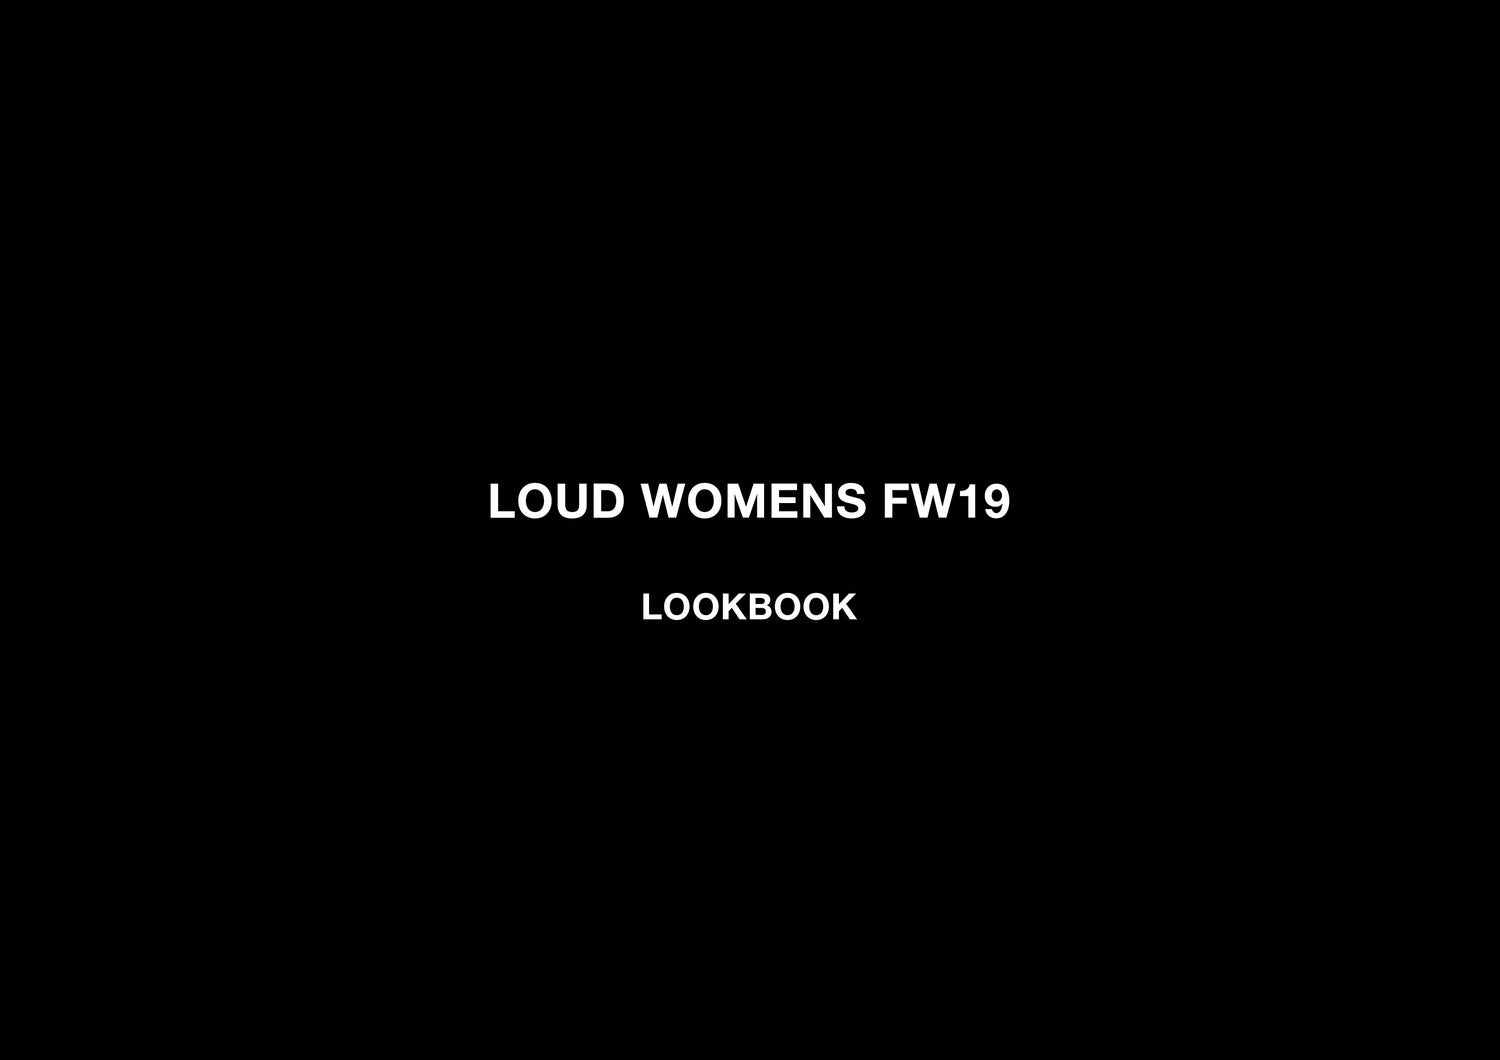 Loud Womens - FW19 Lookbook